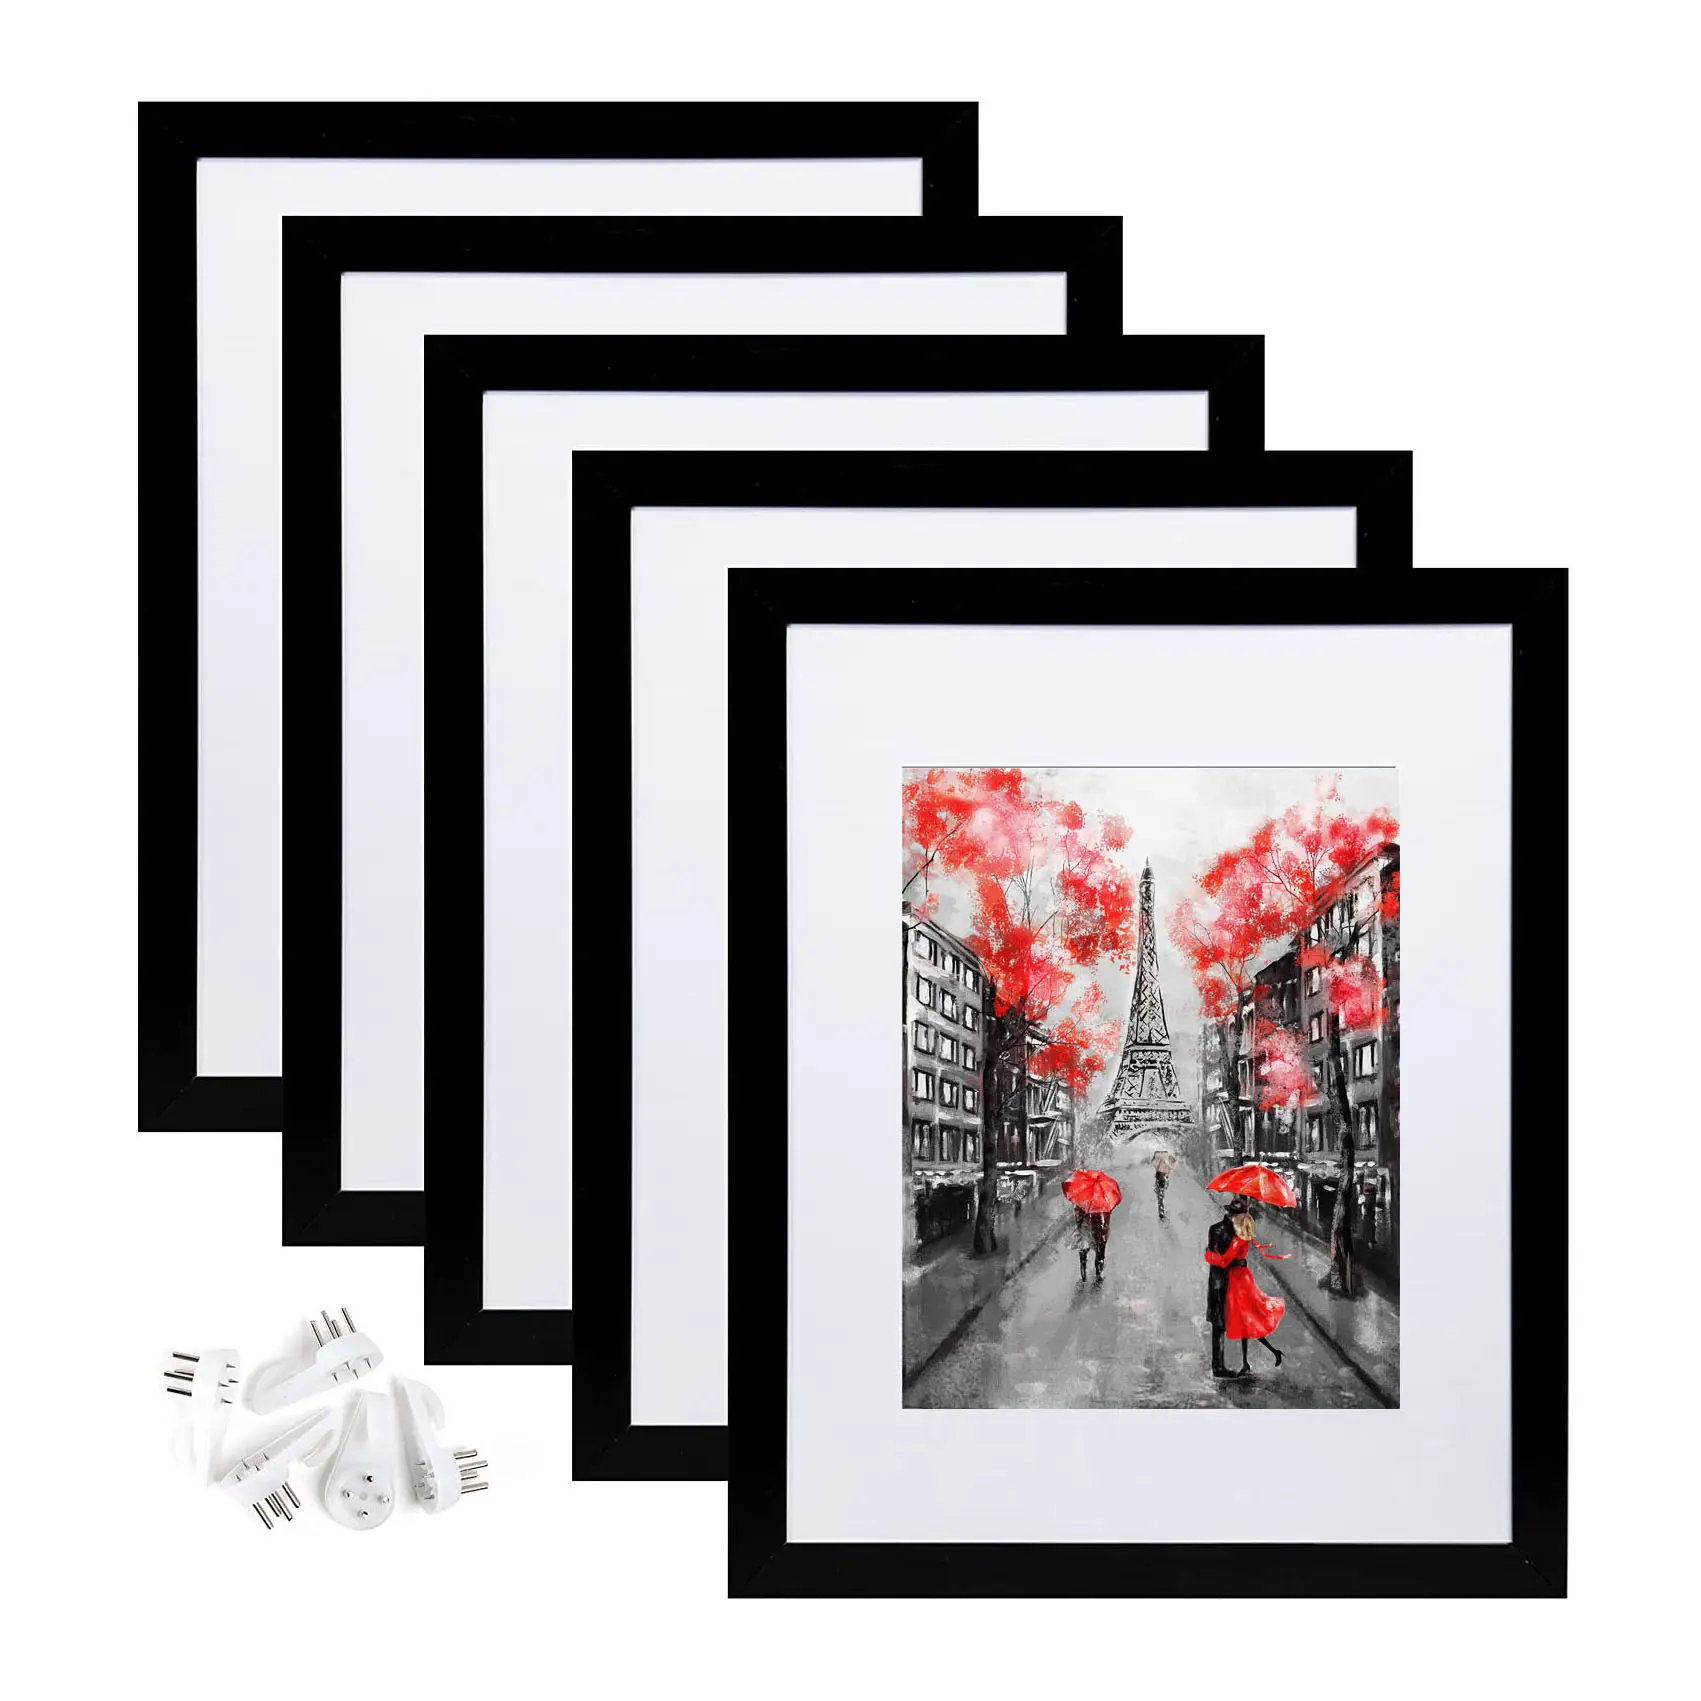 إطارات صور خشبية سوداء مخصصة 11×14 و8×10، ألبومات صور وملحقات للبيع بالجملة